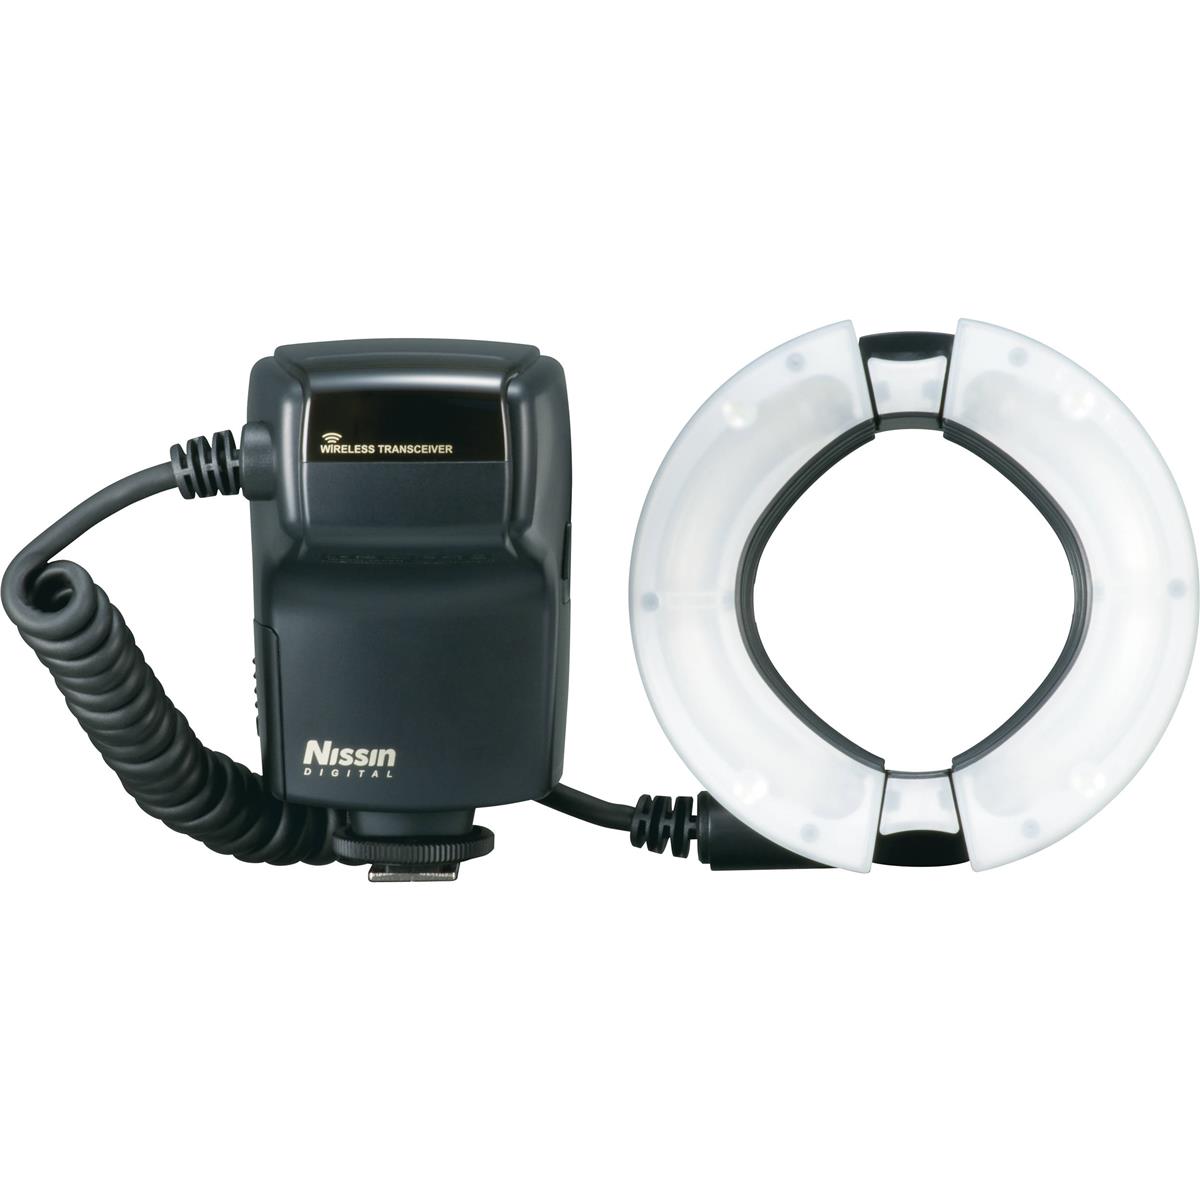 

Nissin MF18 Macro Flash for Nikon i-TTL System